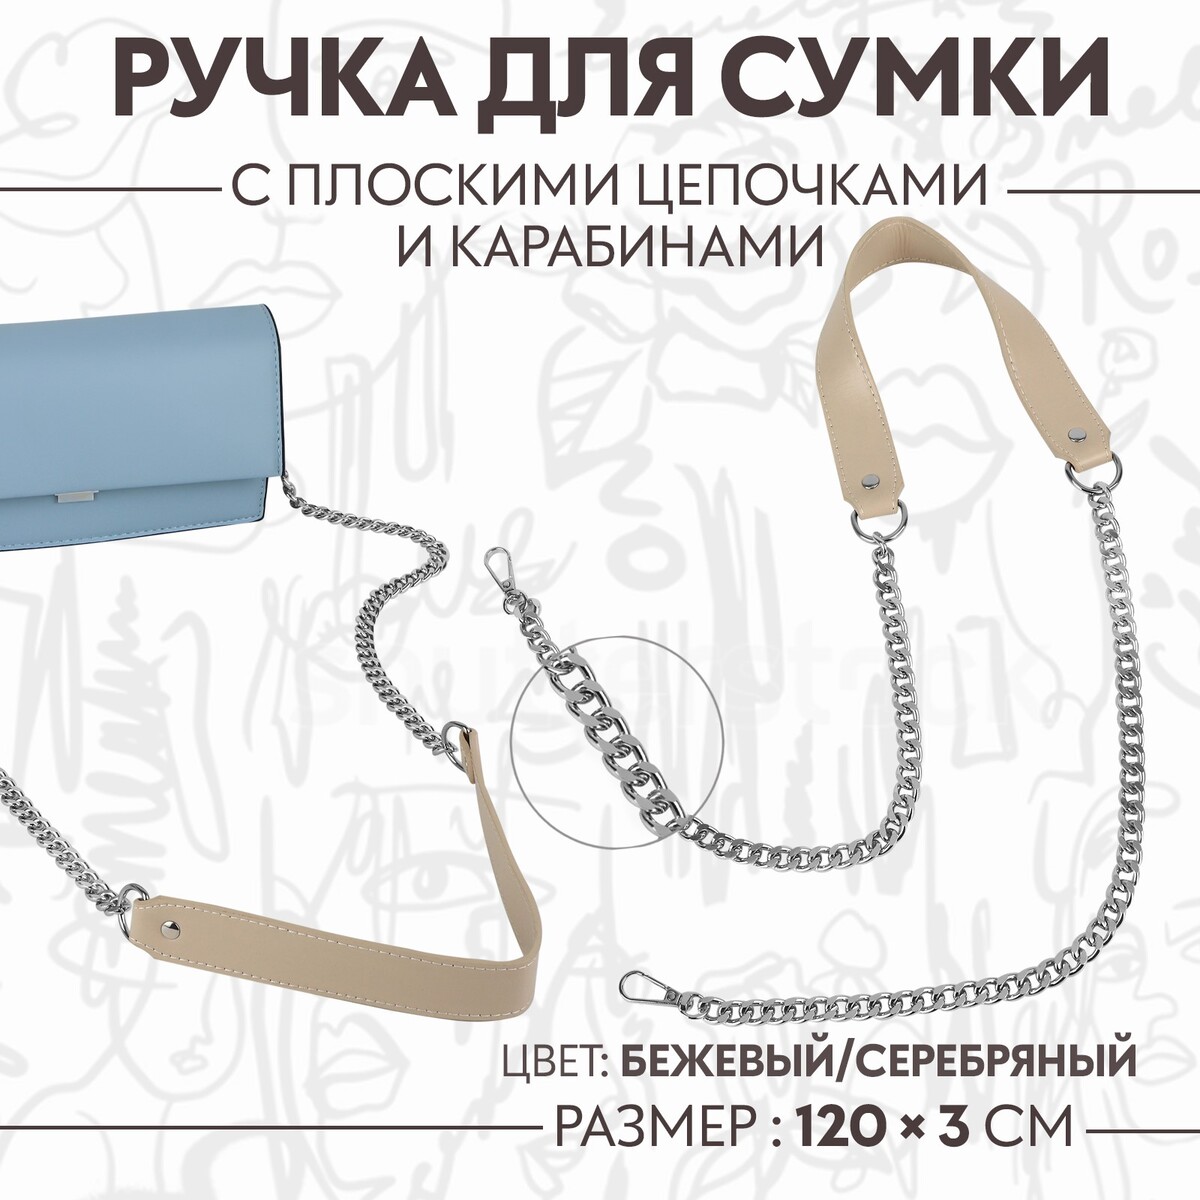 Ручка для сумки, с плоскими цепочками и карабинами, 120 × 3 см, цвет бежевый/серебряный ручка для сумки с цепочками и карабинами 120 × 1 8 см бордовый